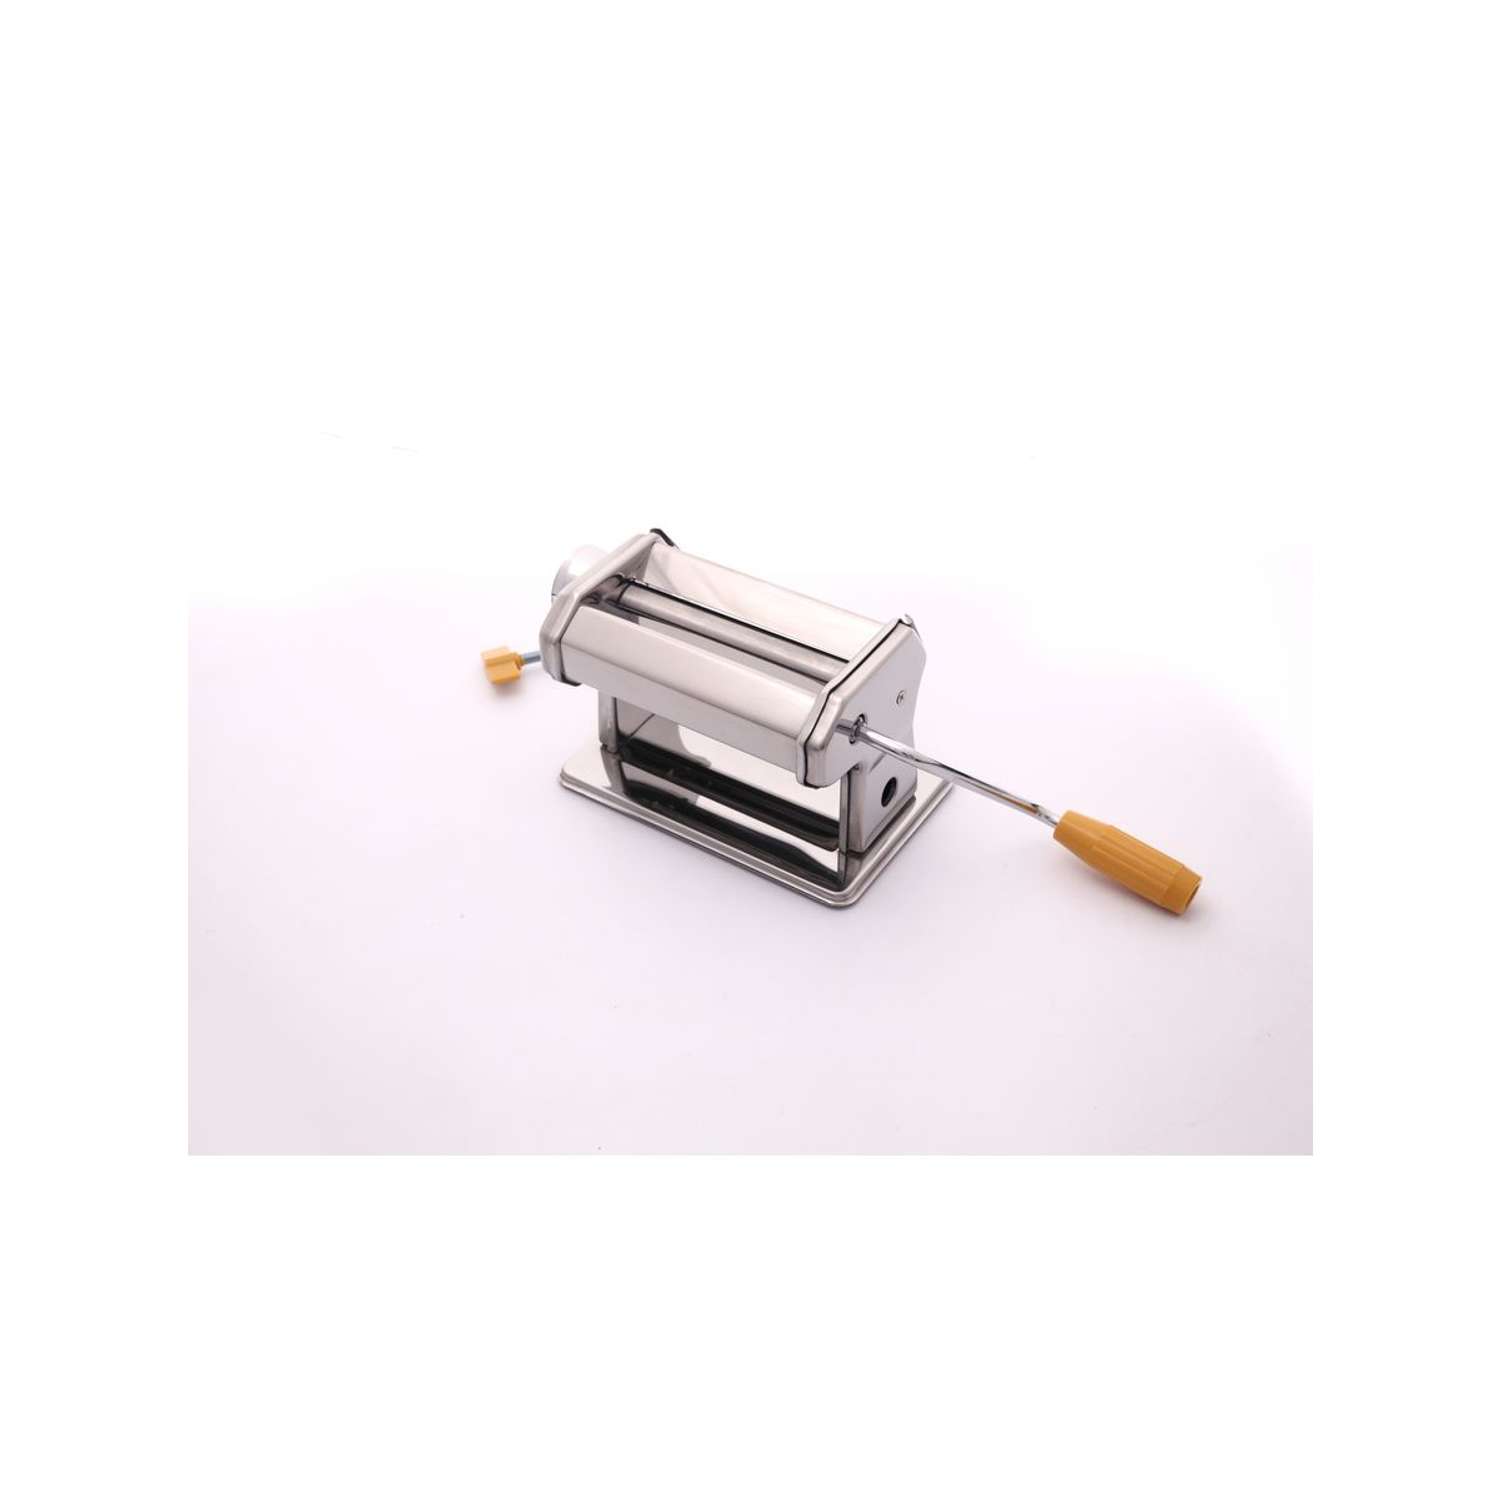 Инструмент для лепки Astra Craft машинка с креплением к столу для равномерного раскатывания пластов полимерной глины - фото 2